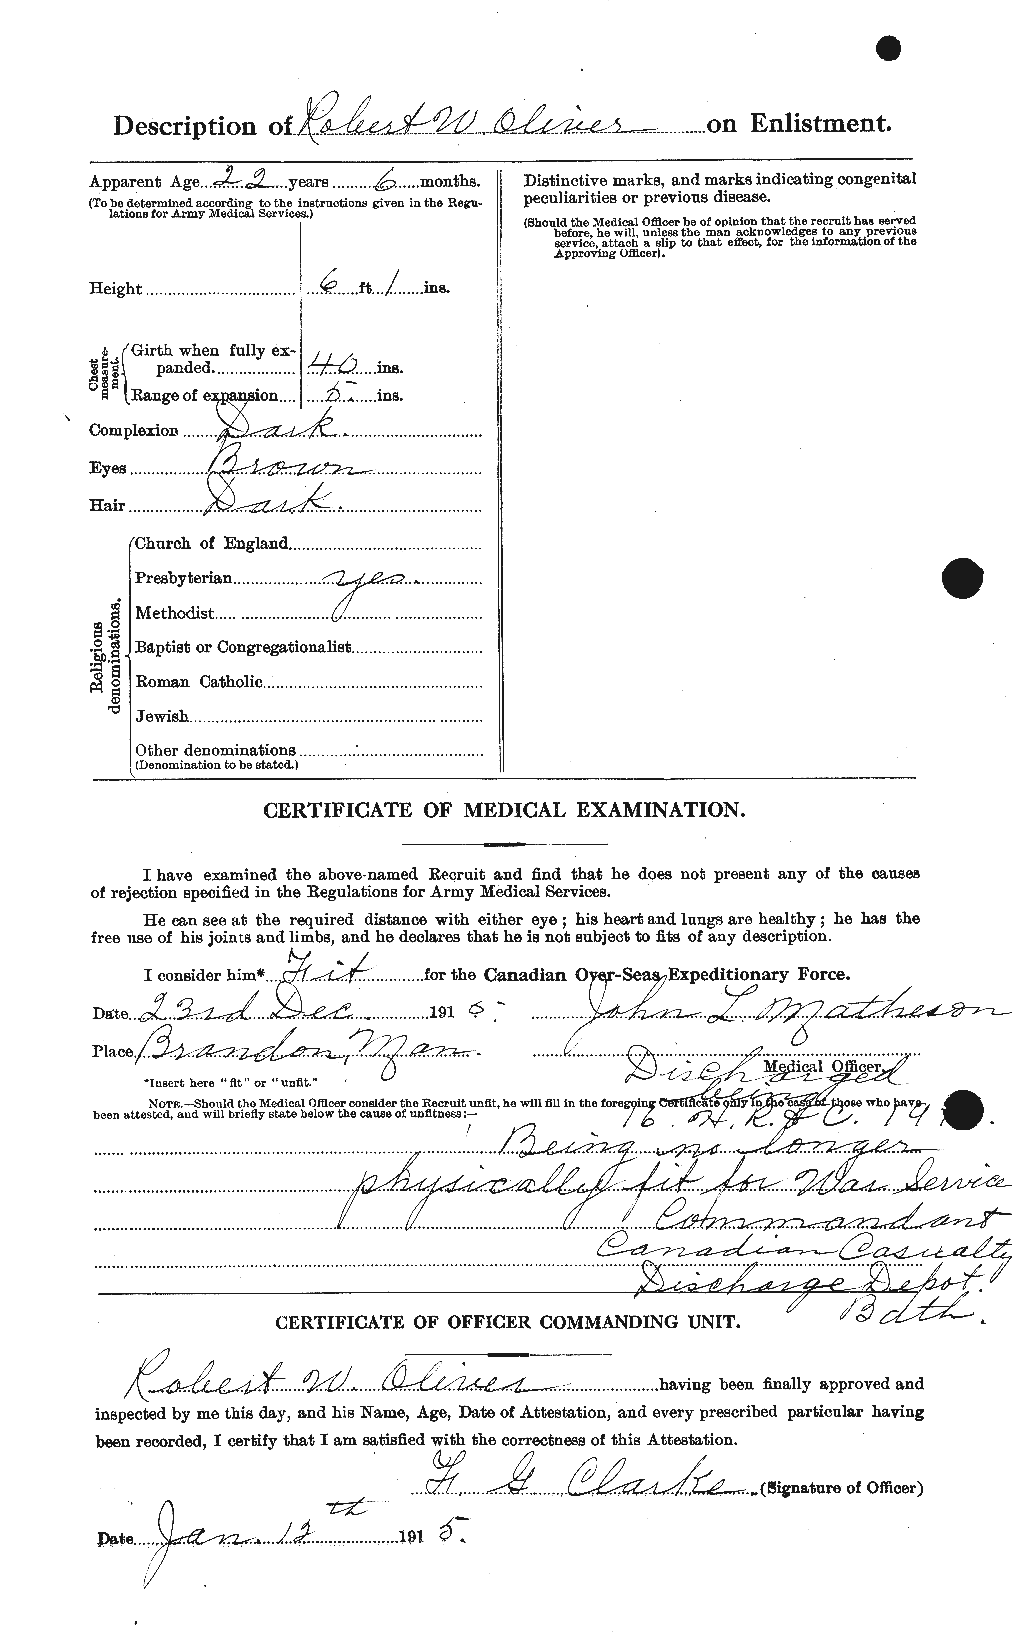 Dossiers du Personnel de la Première Guerre mondiale - CEC 555492b